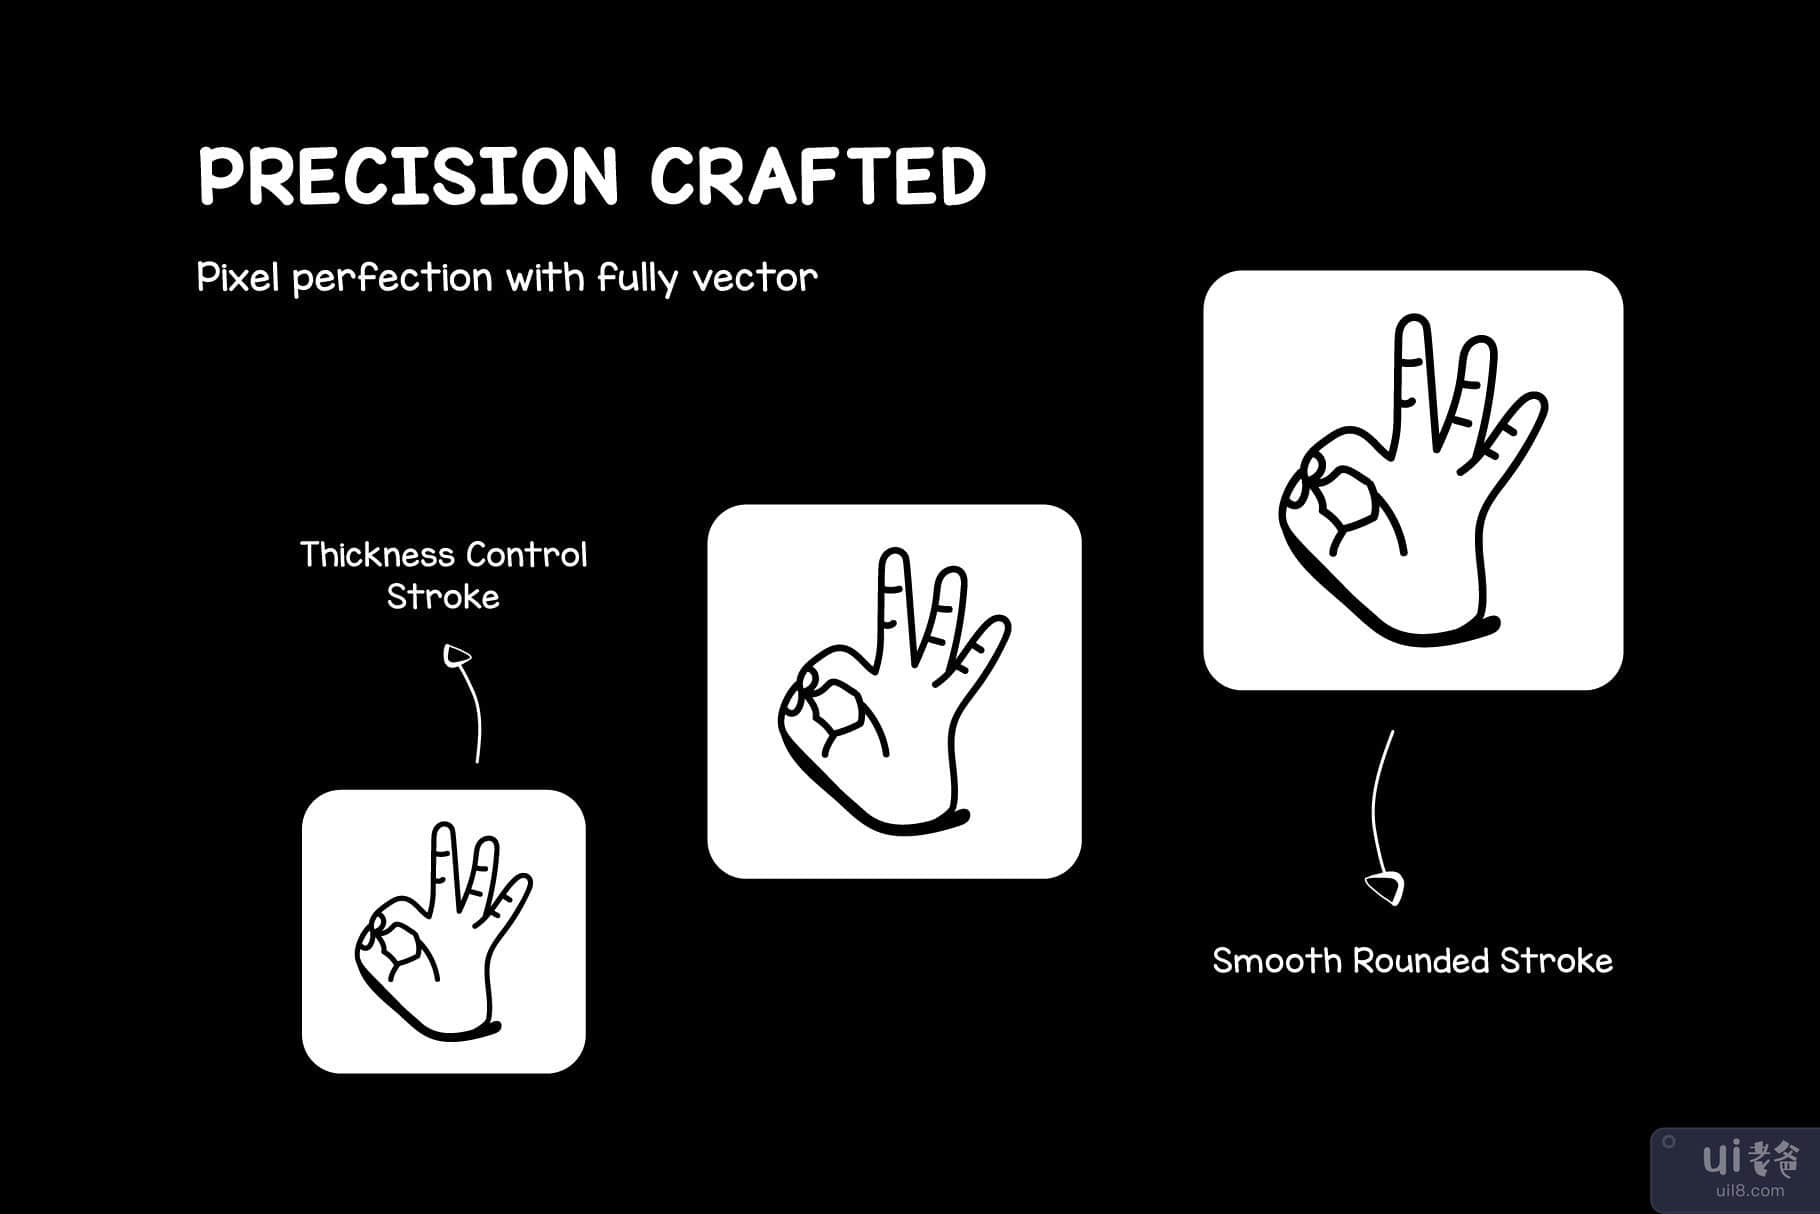 涂鸦手语图标的集合(Collection of Doodle Sign Language Icons)插图5